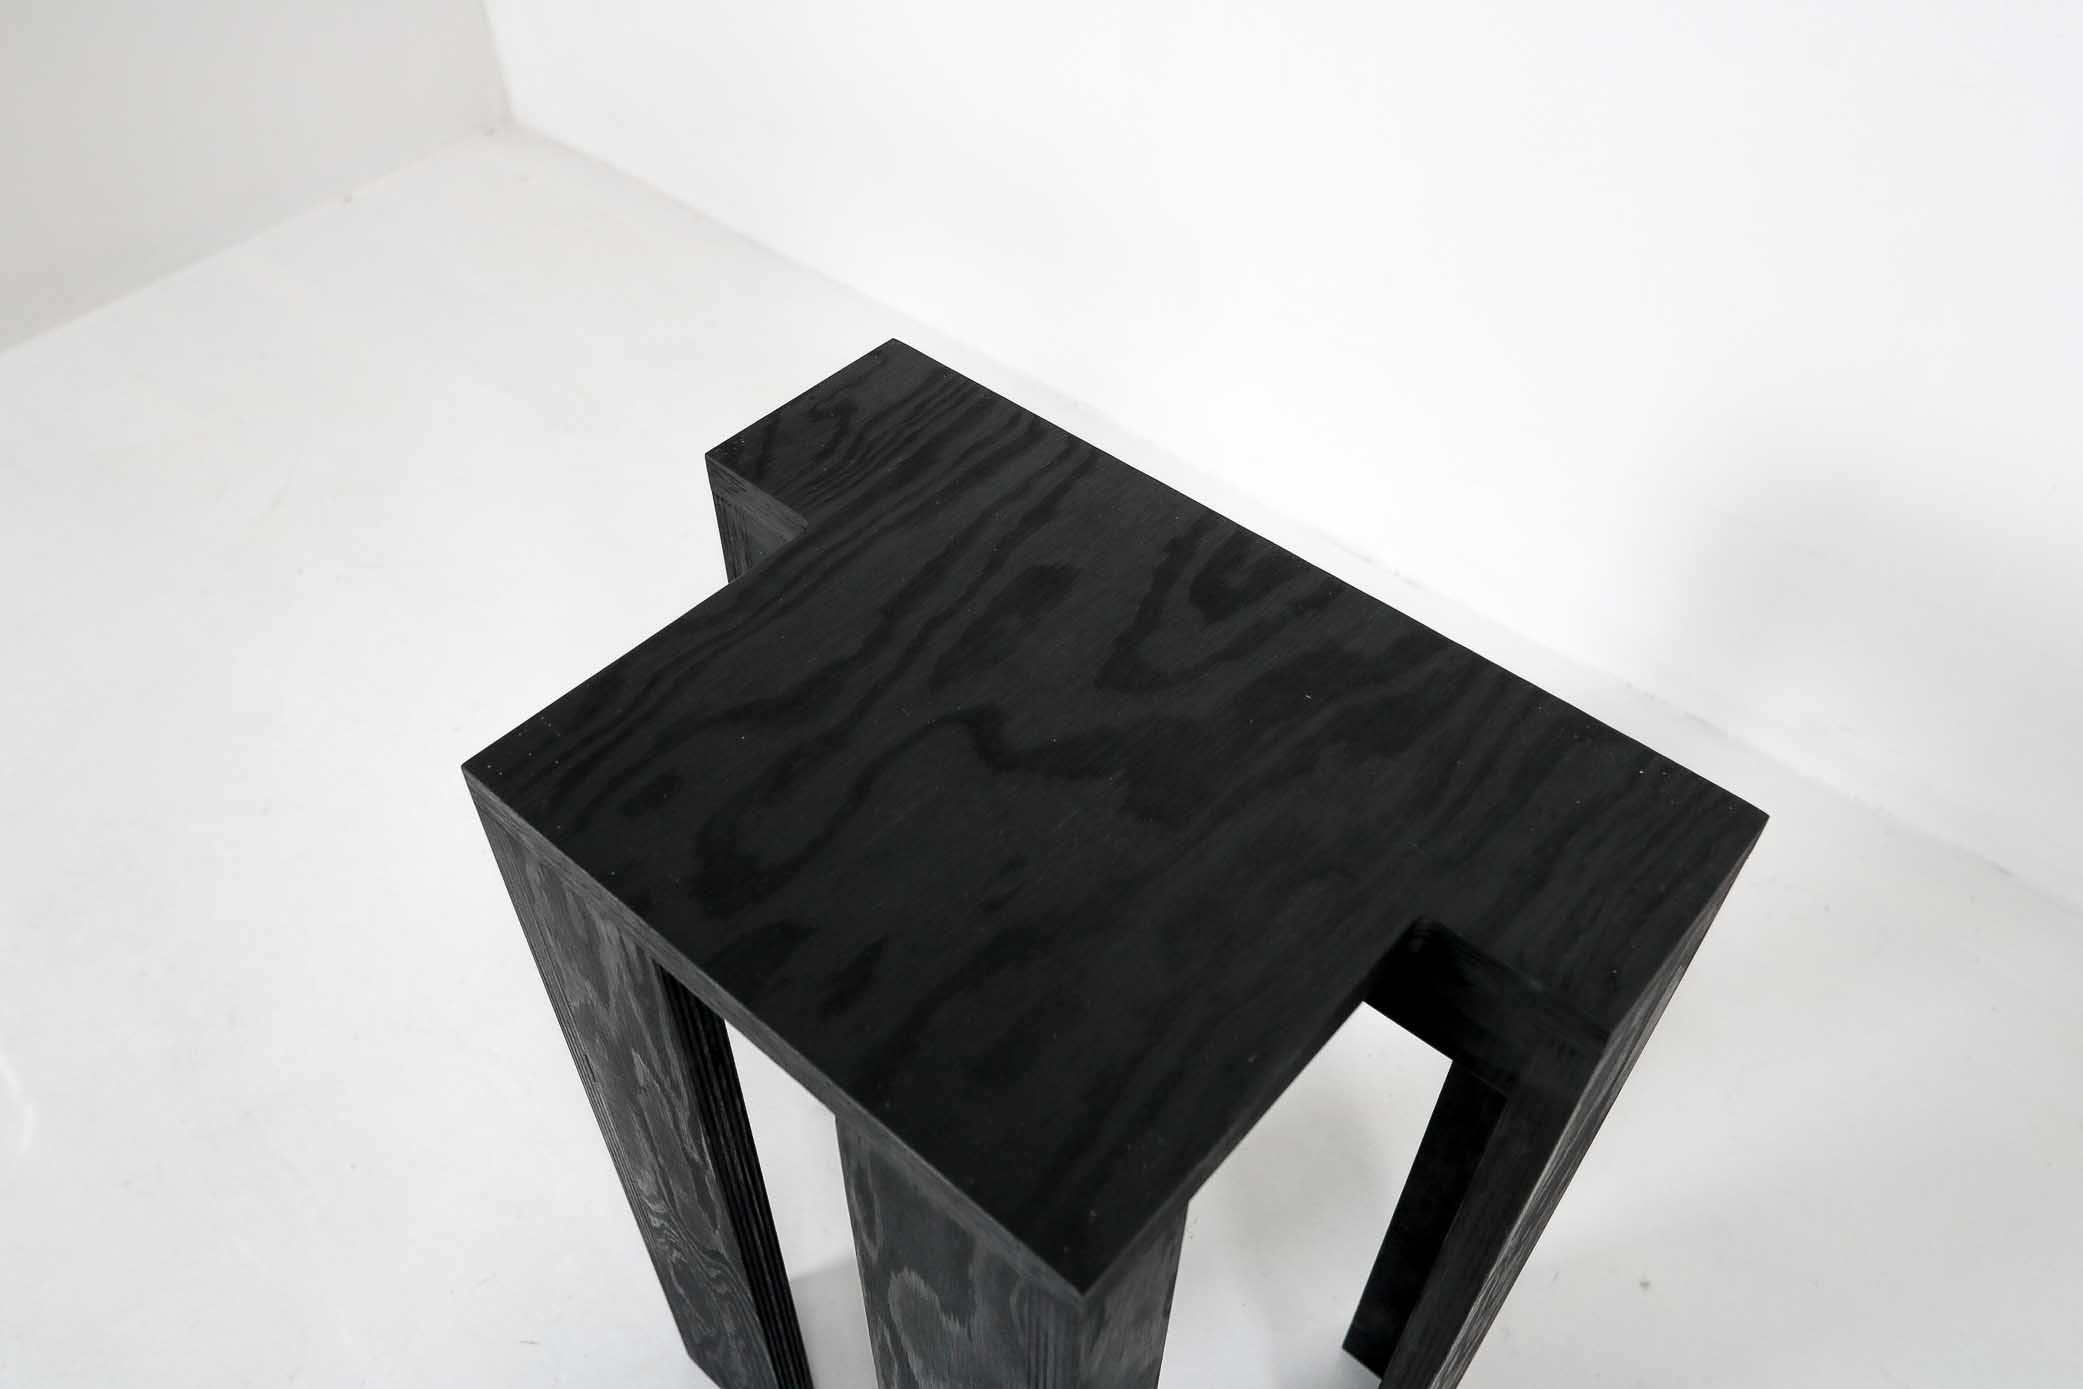 Stackable stools by Bram Vanderbekethumbnail